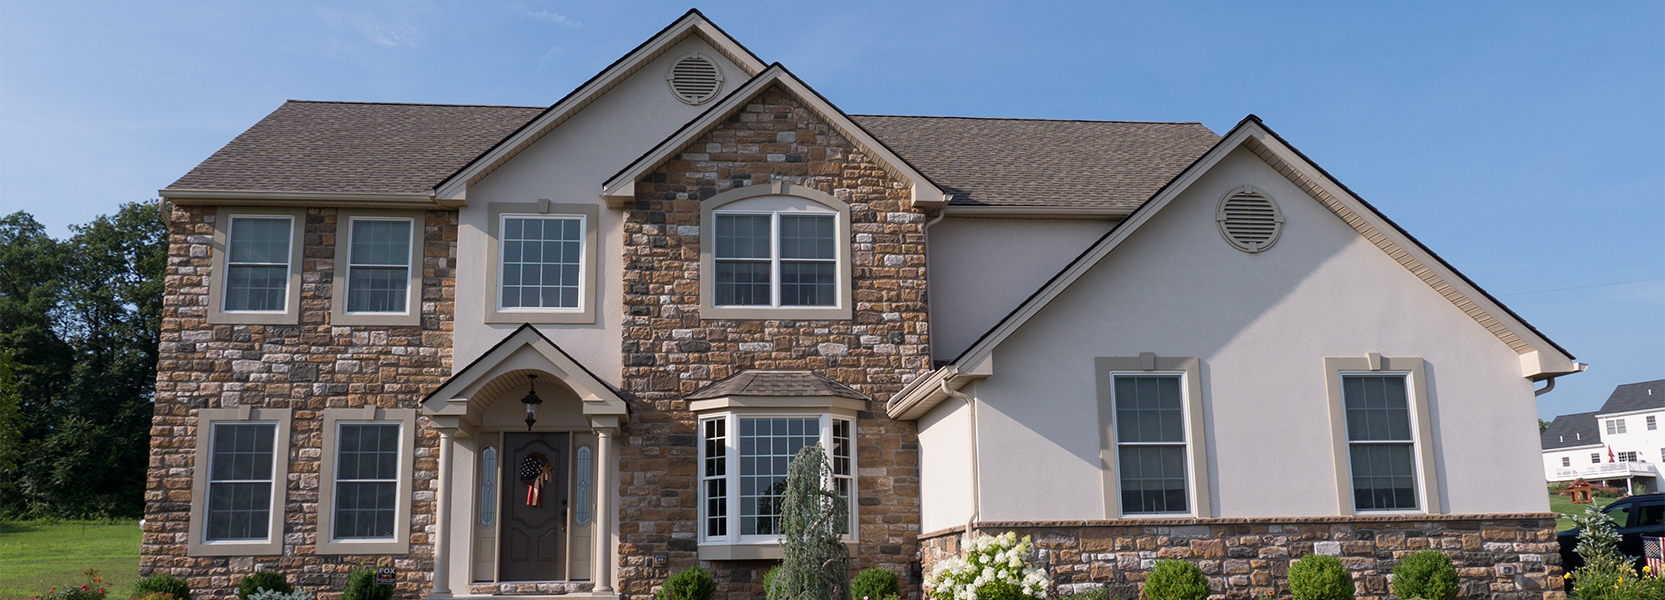 R & K Custom Homes Builders of the Lehigh Valley - Energy-Efficient Custom Schaffer Model Home